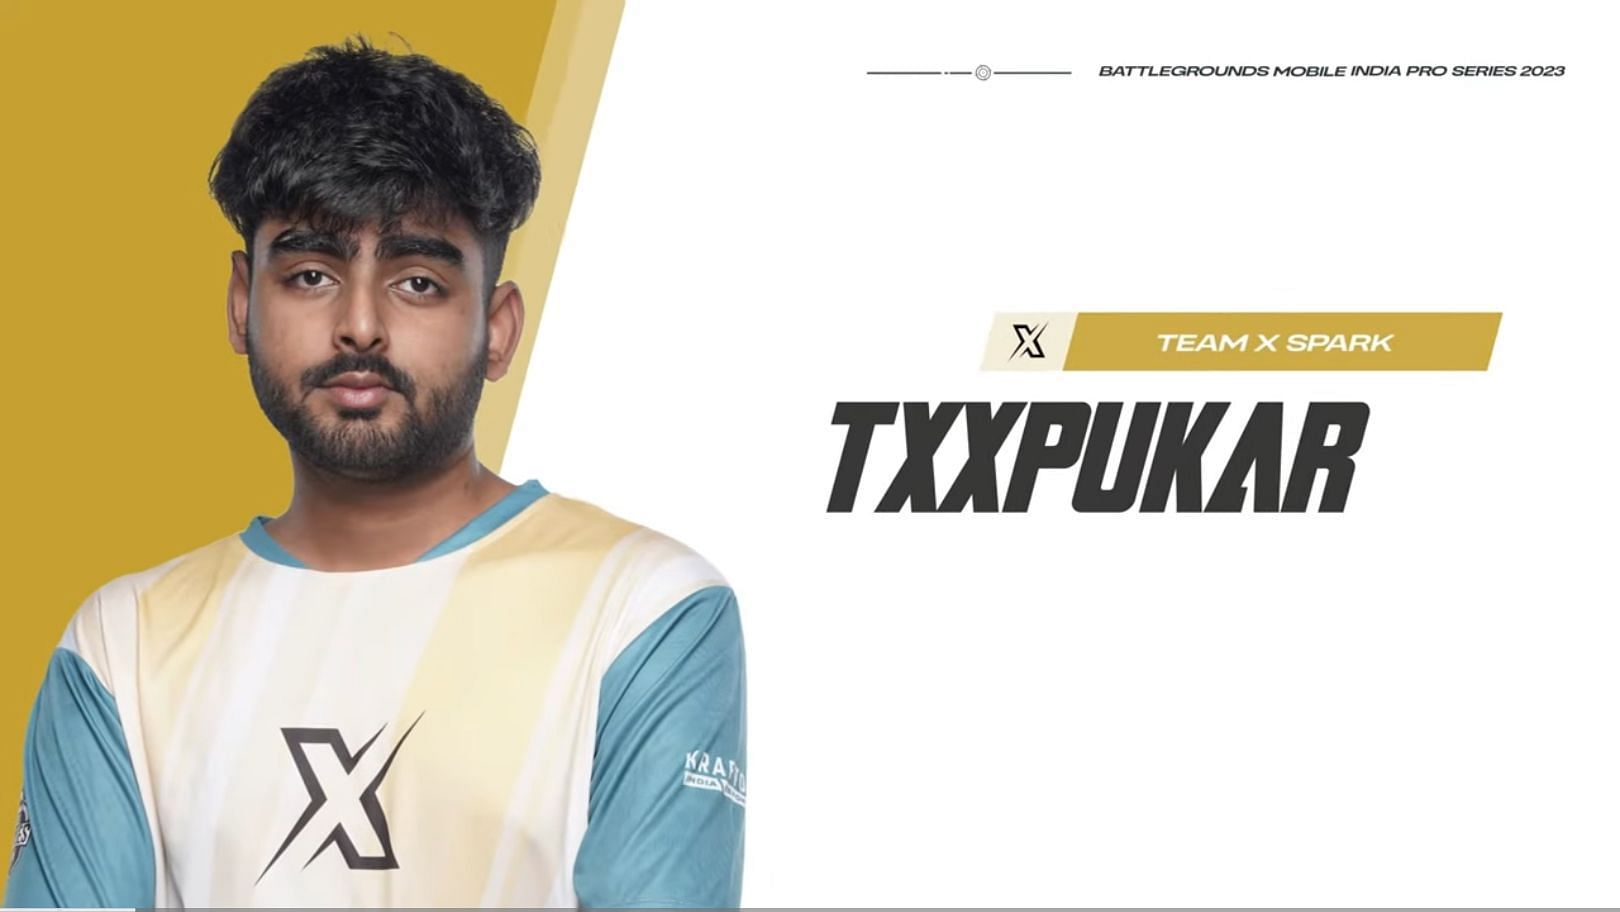 Pukar leaves Team XSpark (Image via BGMI)